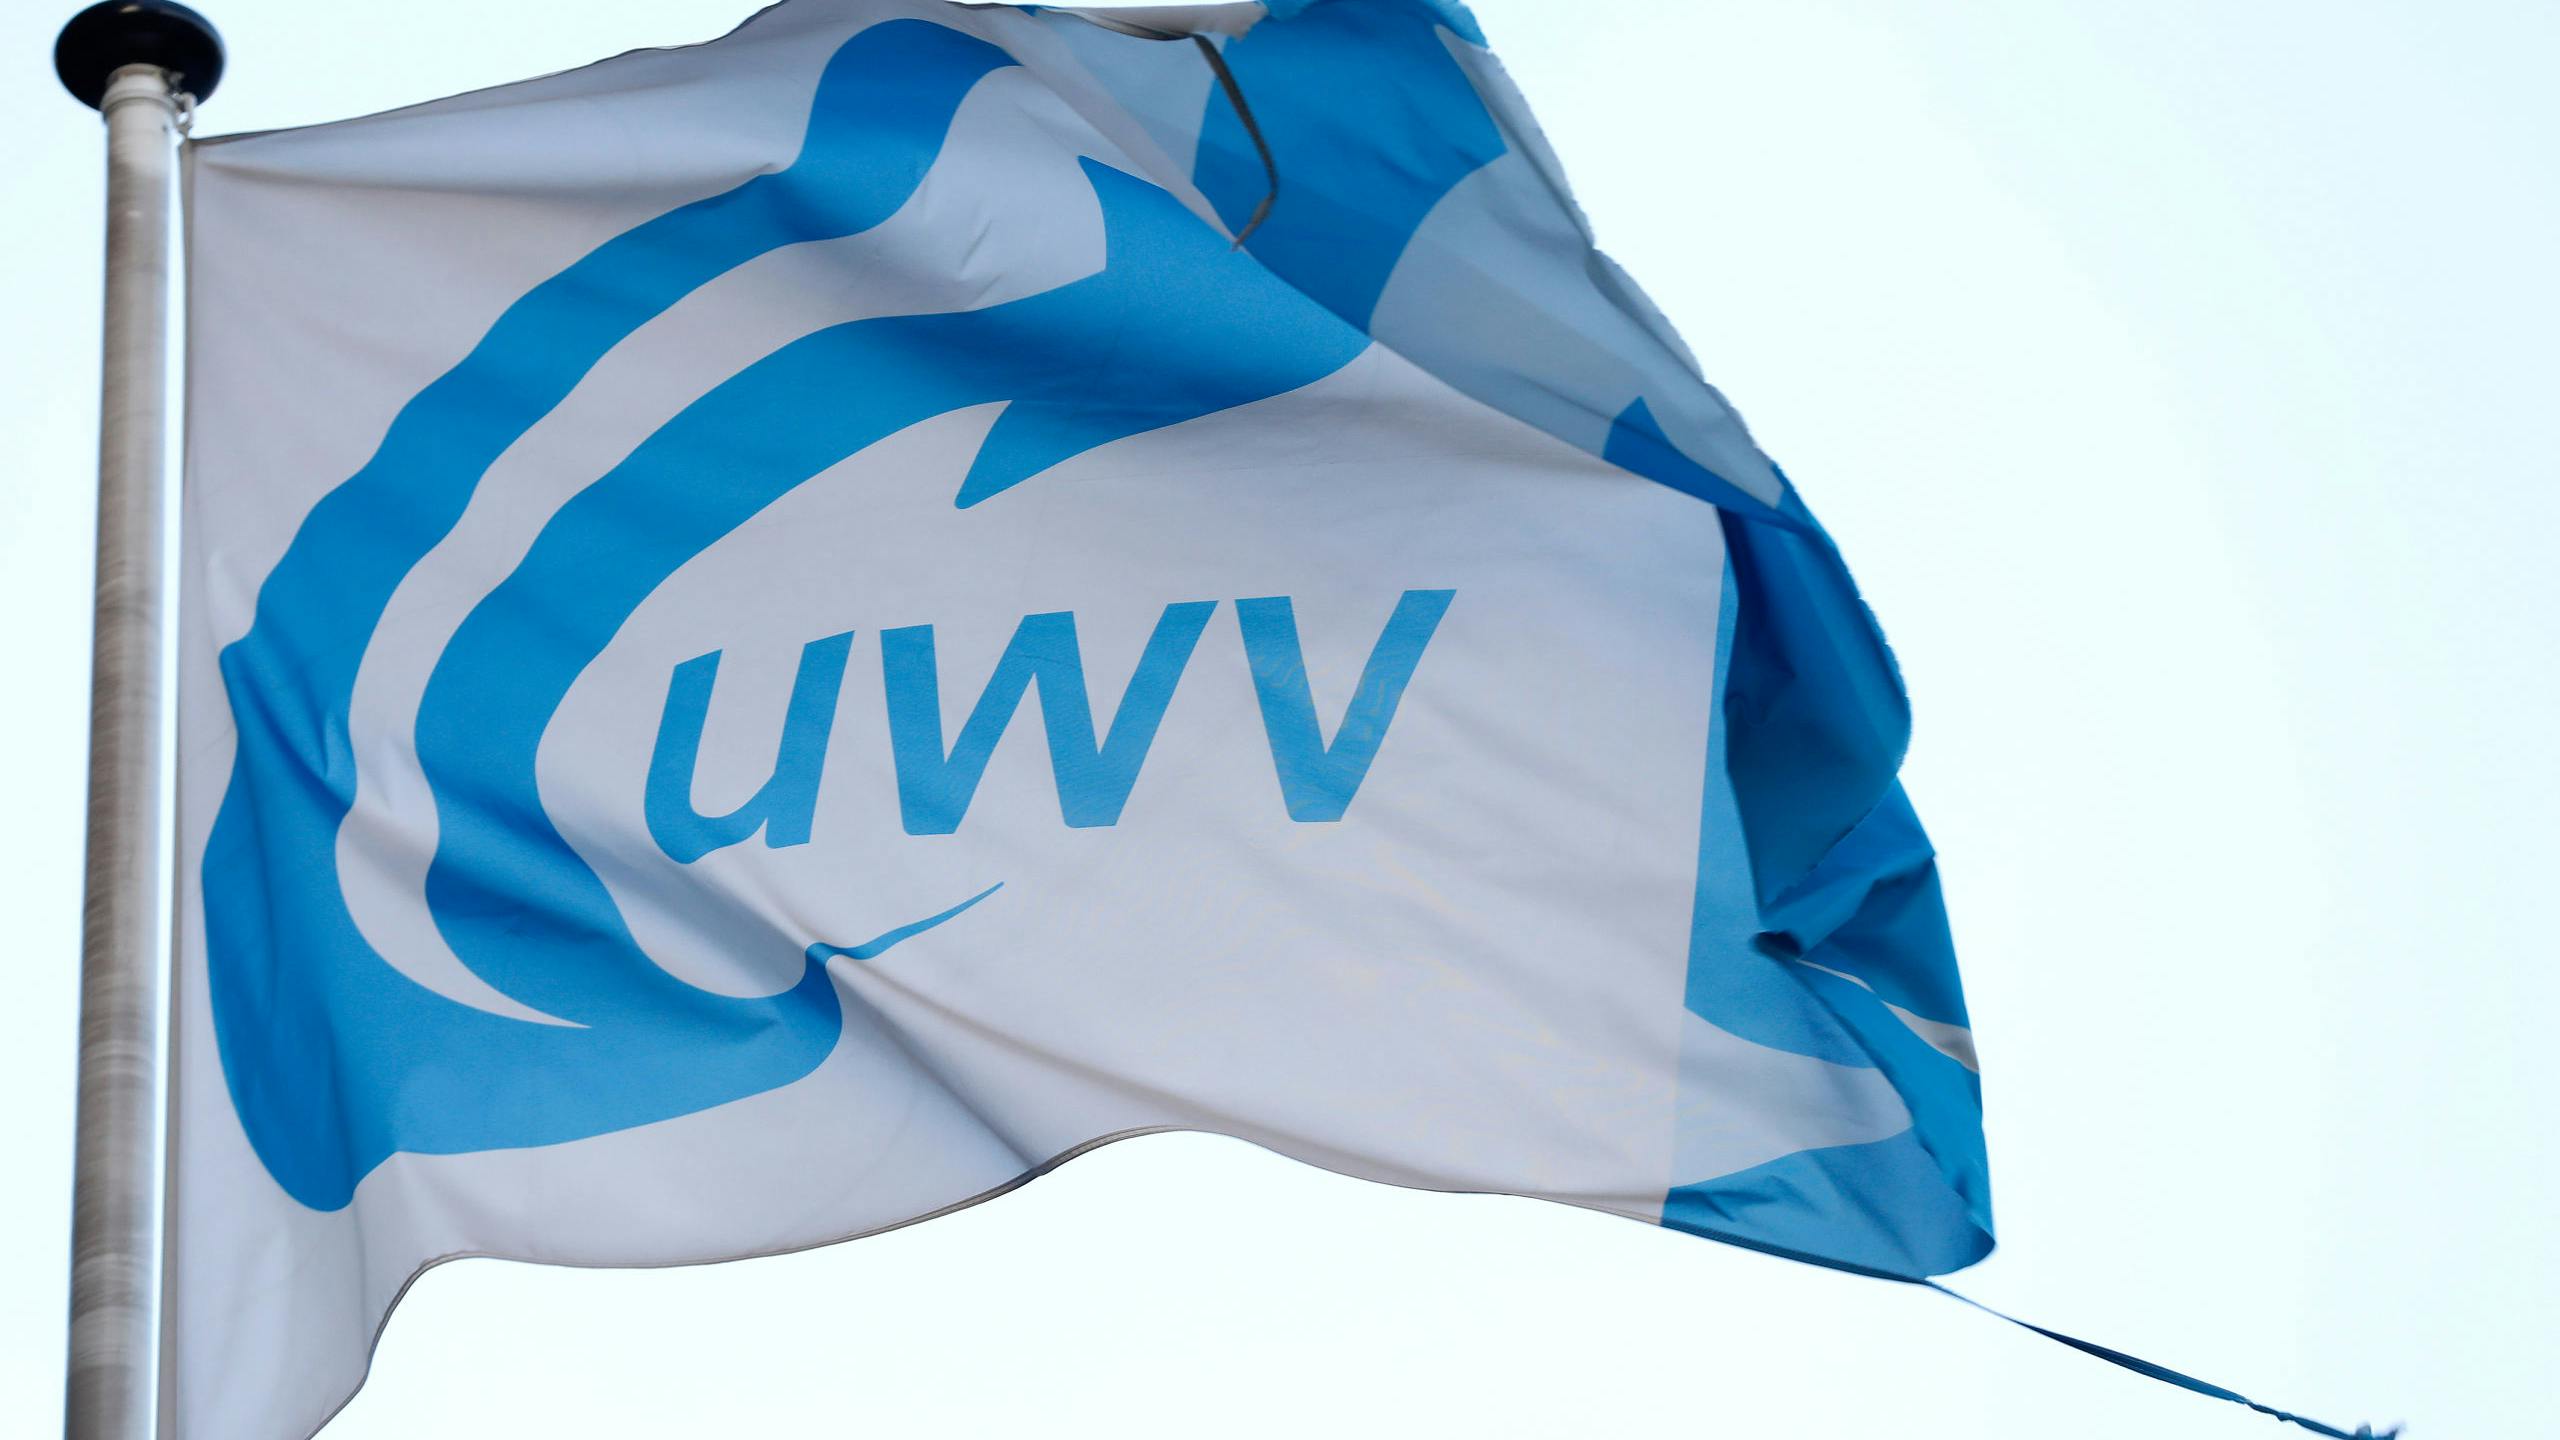 2017-11-13 17:05:02 ROTTERDAM - Het logo van uitkeringsinstantie UWV. ANP BAS CZERWINSKI